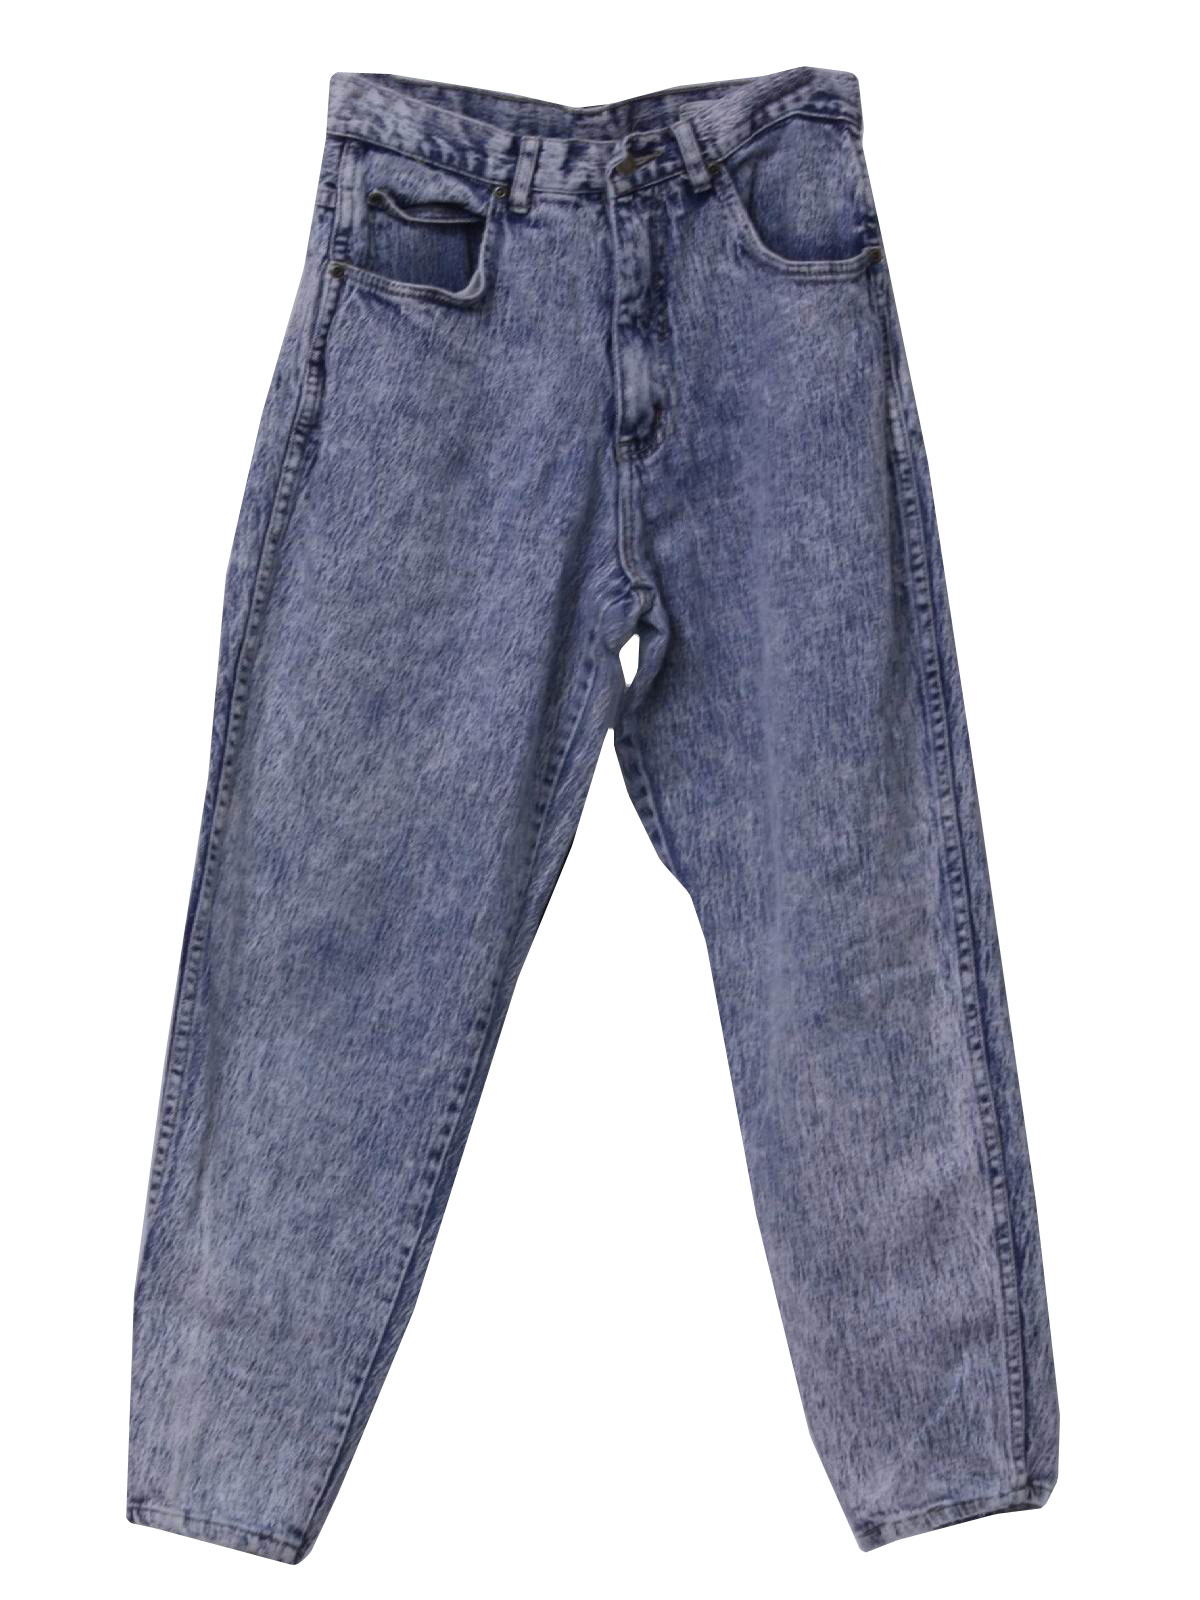 Eighties Pure Jeanswear Pants: 80s -Pure Jeanswear- Womens light blue ...